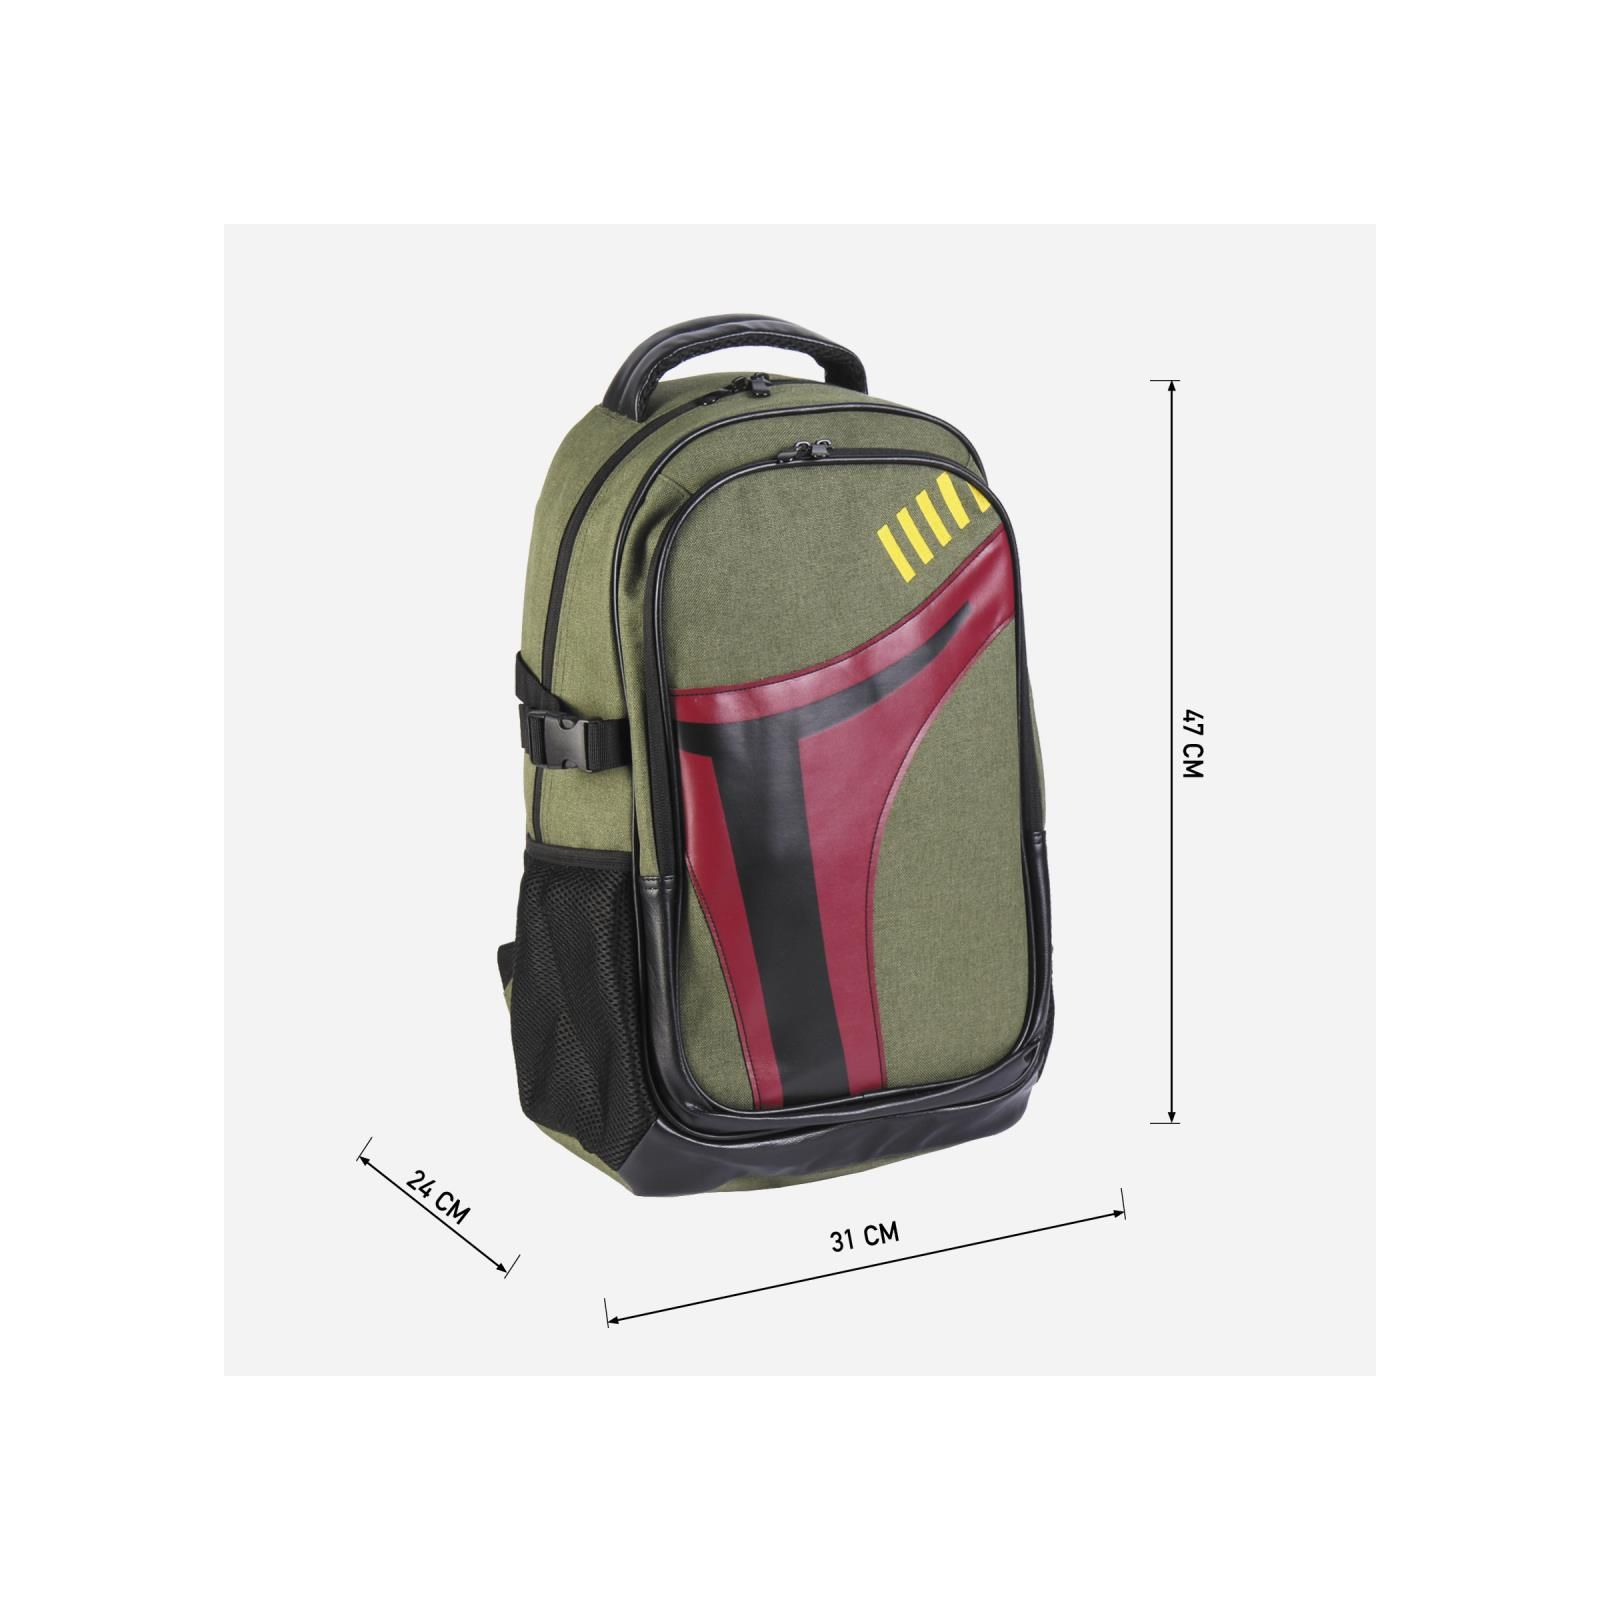 Рюкзак школьный Cerda Star Wars - Boba Fett Casual Travel Backpack (CERDA-2100003724) изображение 3